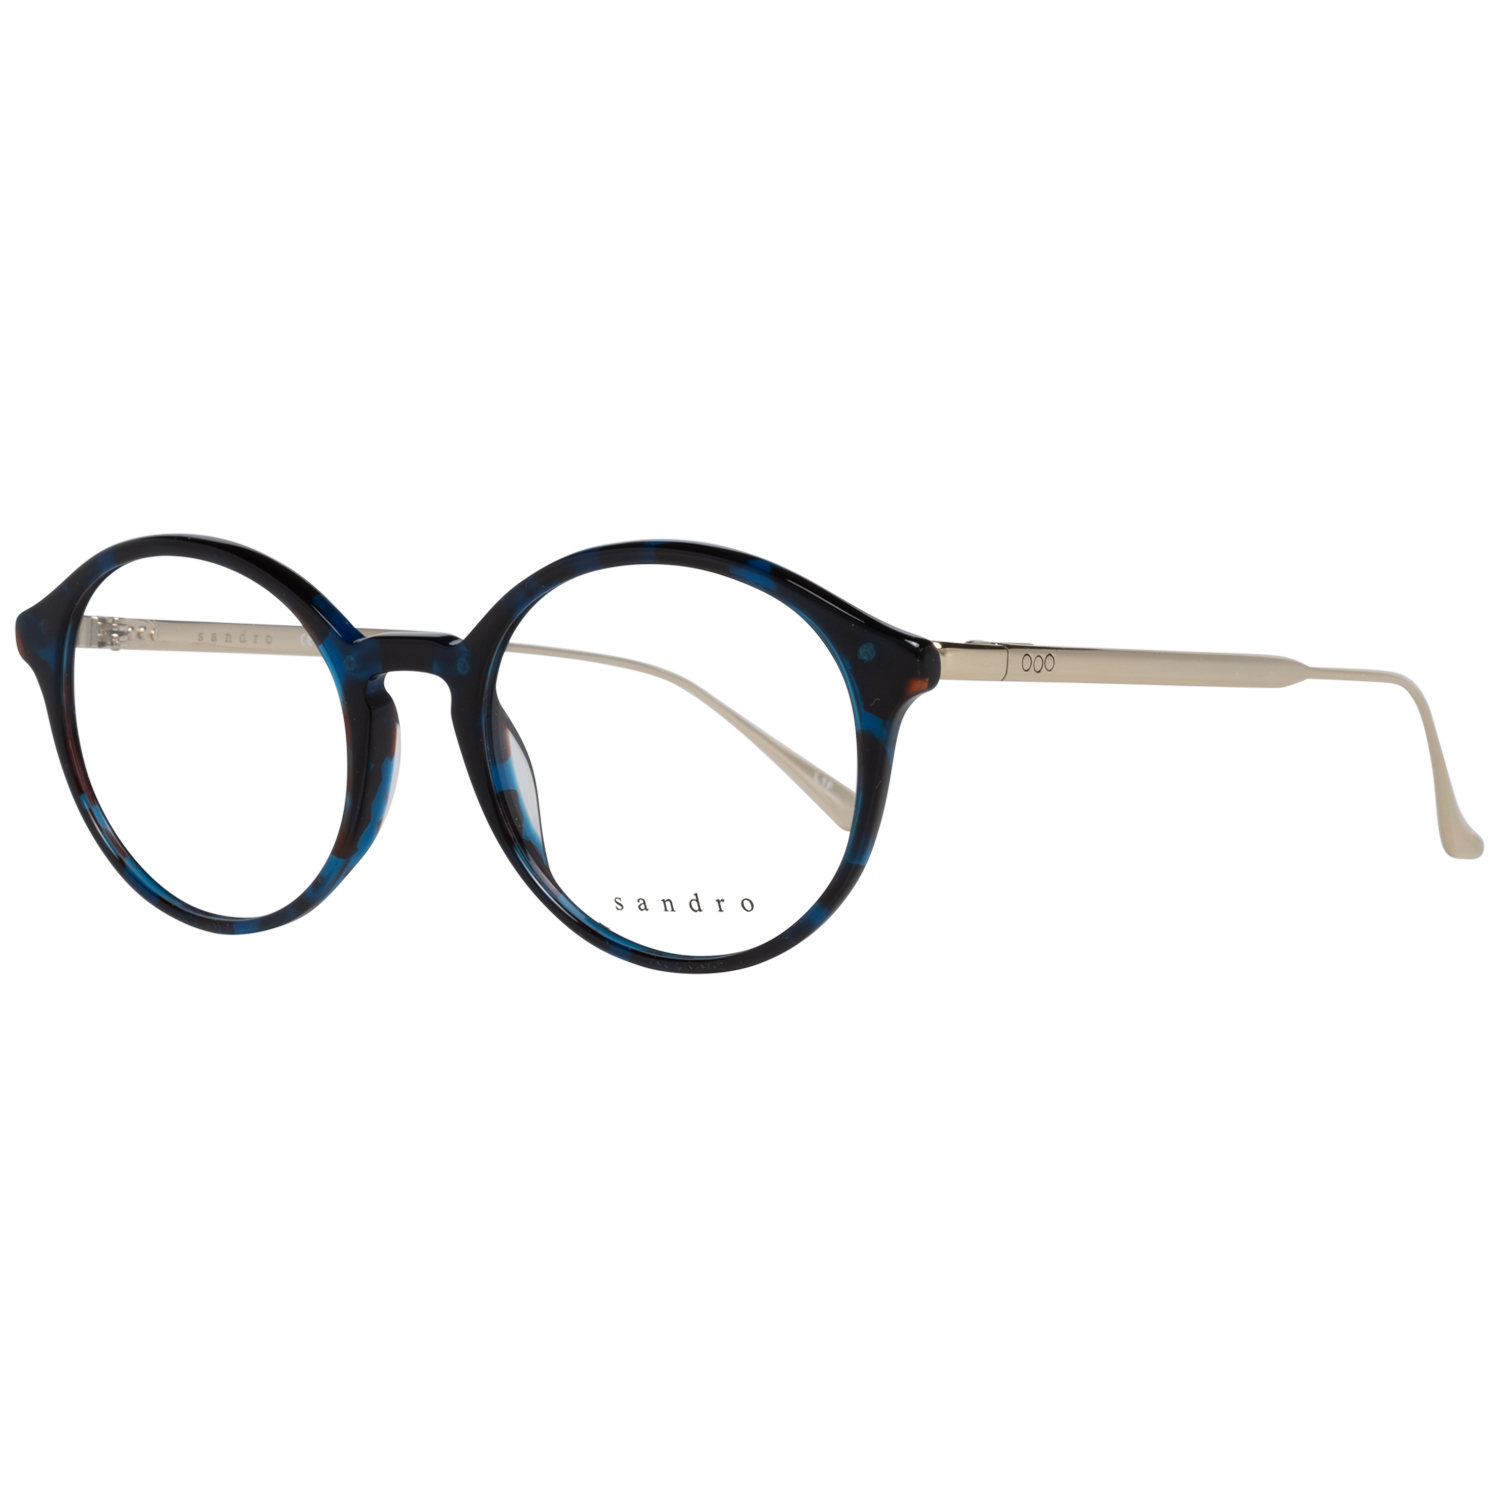 Sandro Frames Sandro Optical Frame SD2014 209 50 Eyeglasses Eyewear UK USA Australia 